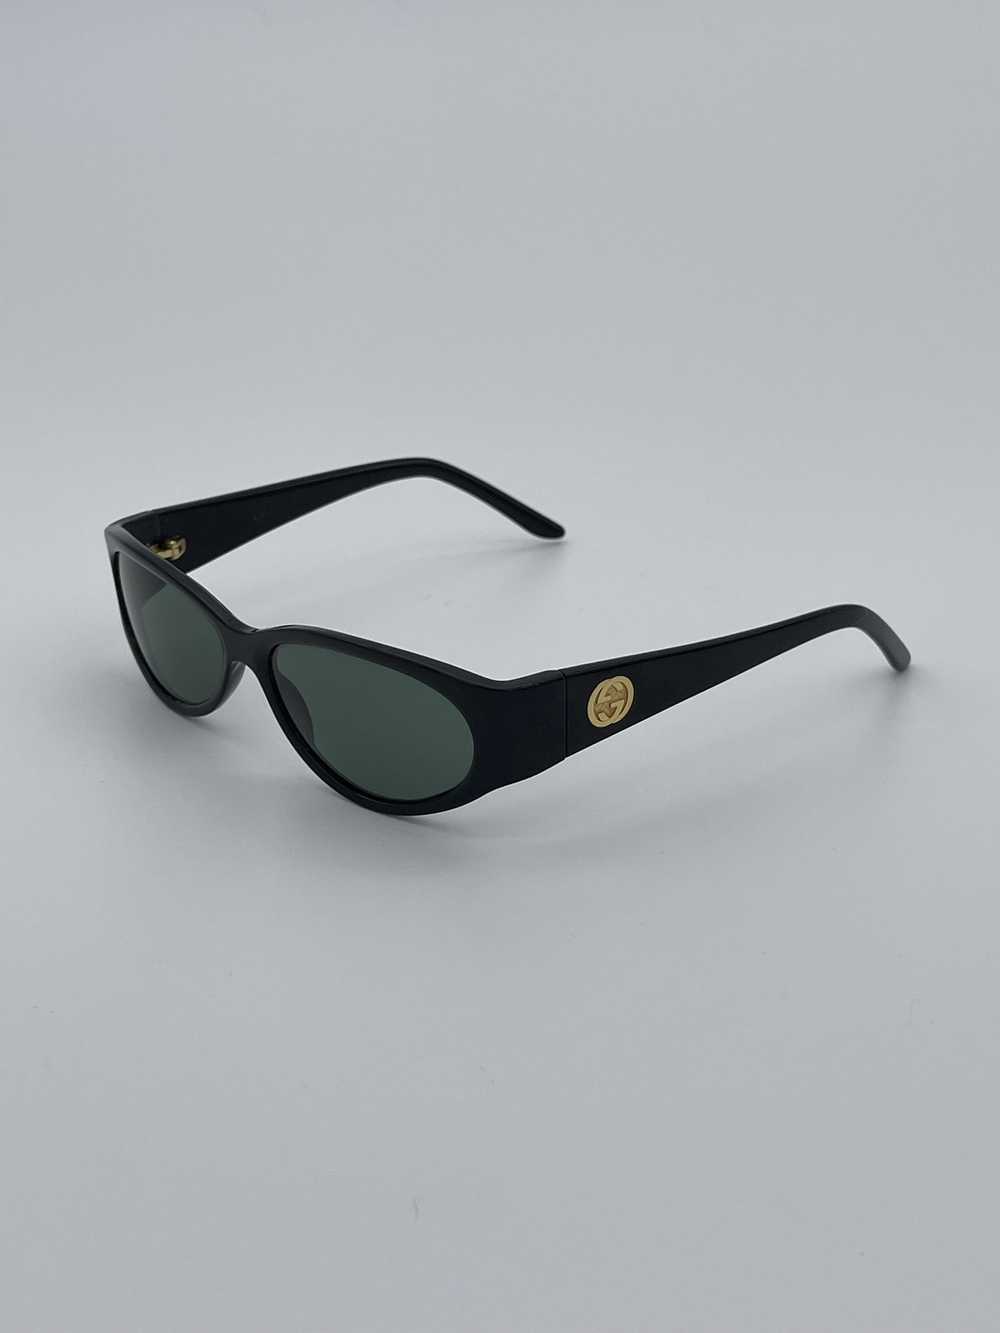 Gucci Rare Vintage Gucci Black Sunglasses - image 3